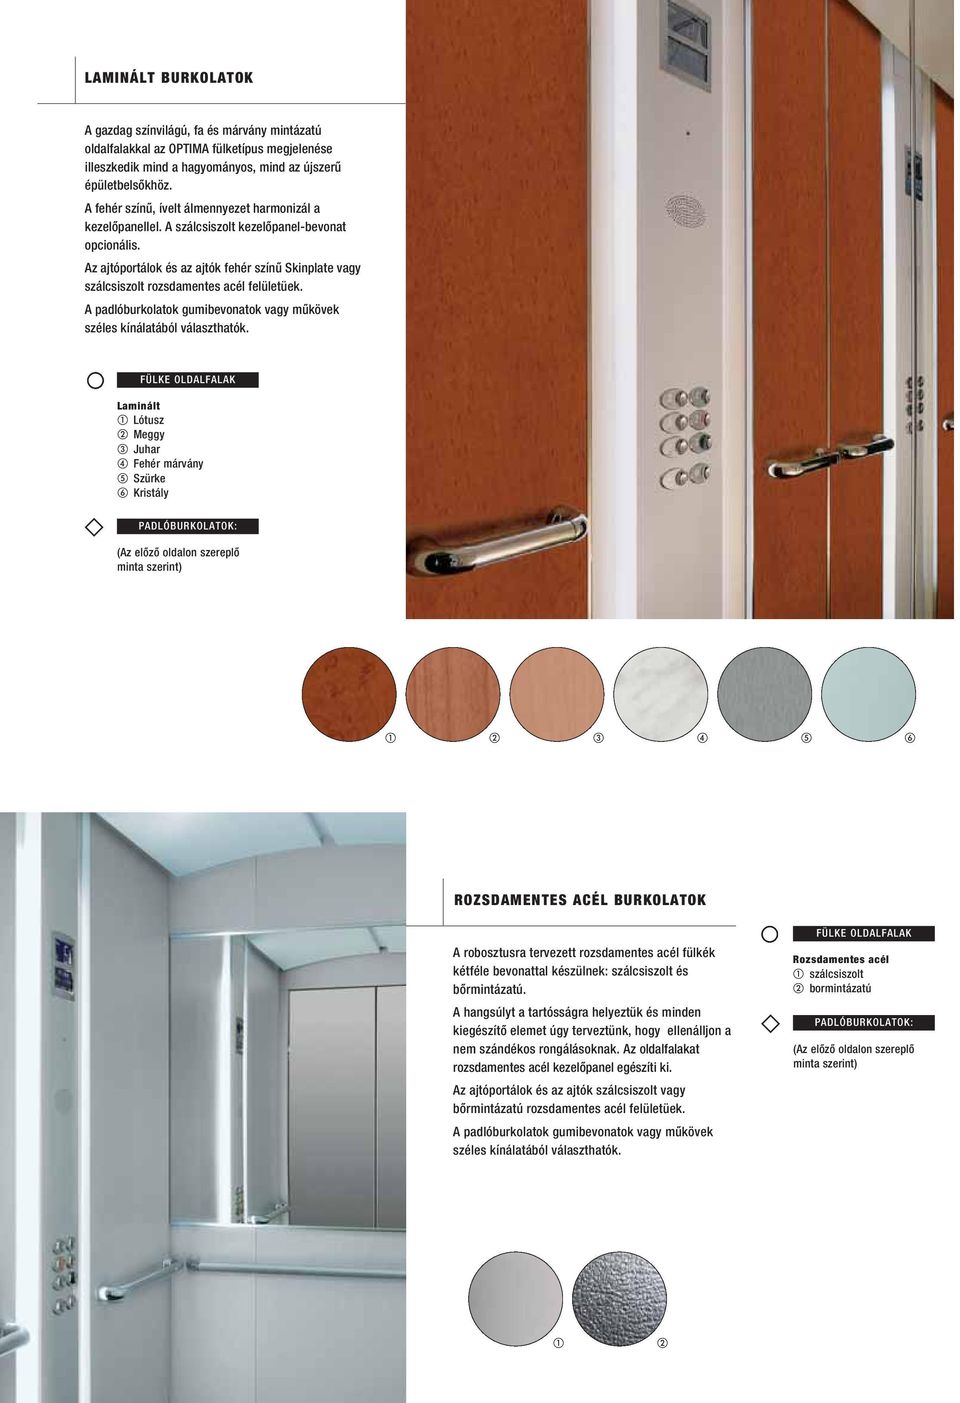 Az ajtóportálok és az ajtók fehér színû Skinplate vagy szálcsiszolt rozsdamentes acél felületüek. A padlóburkolatok gumibevonatok vagy mûkövek széles kínálatából választhatók.